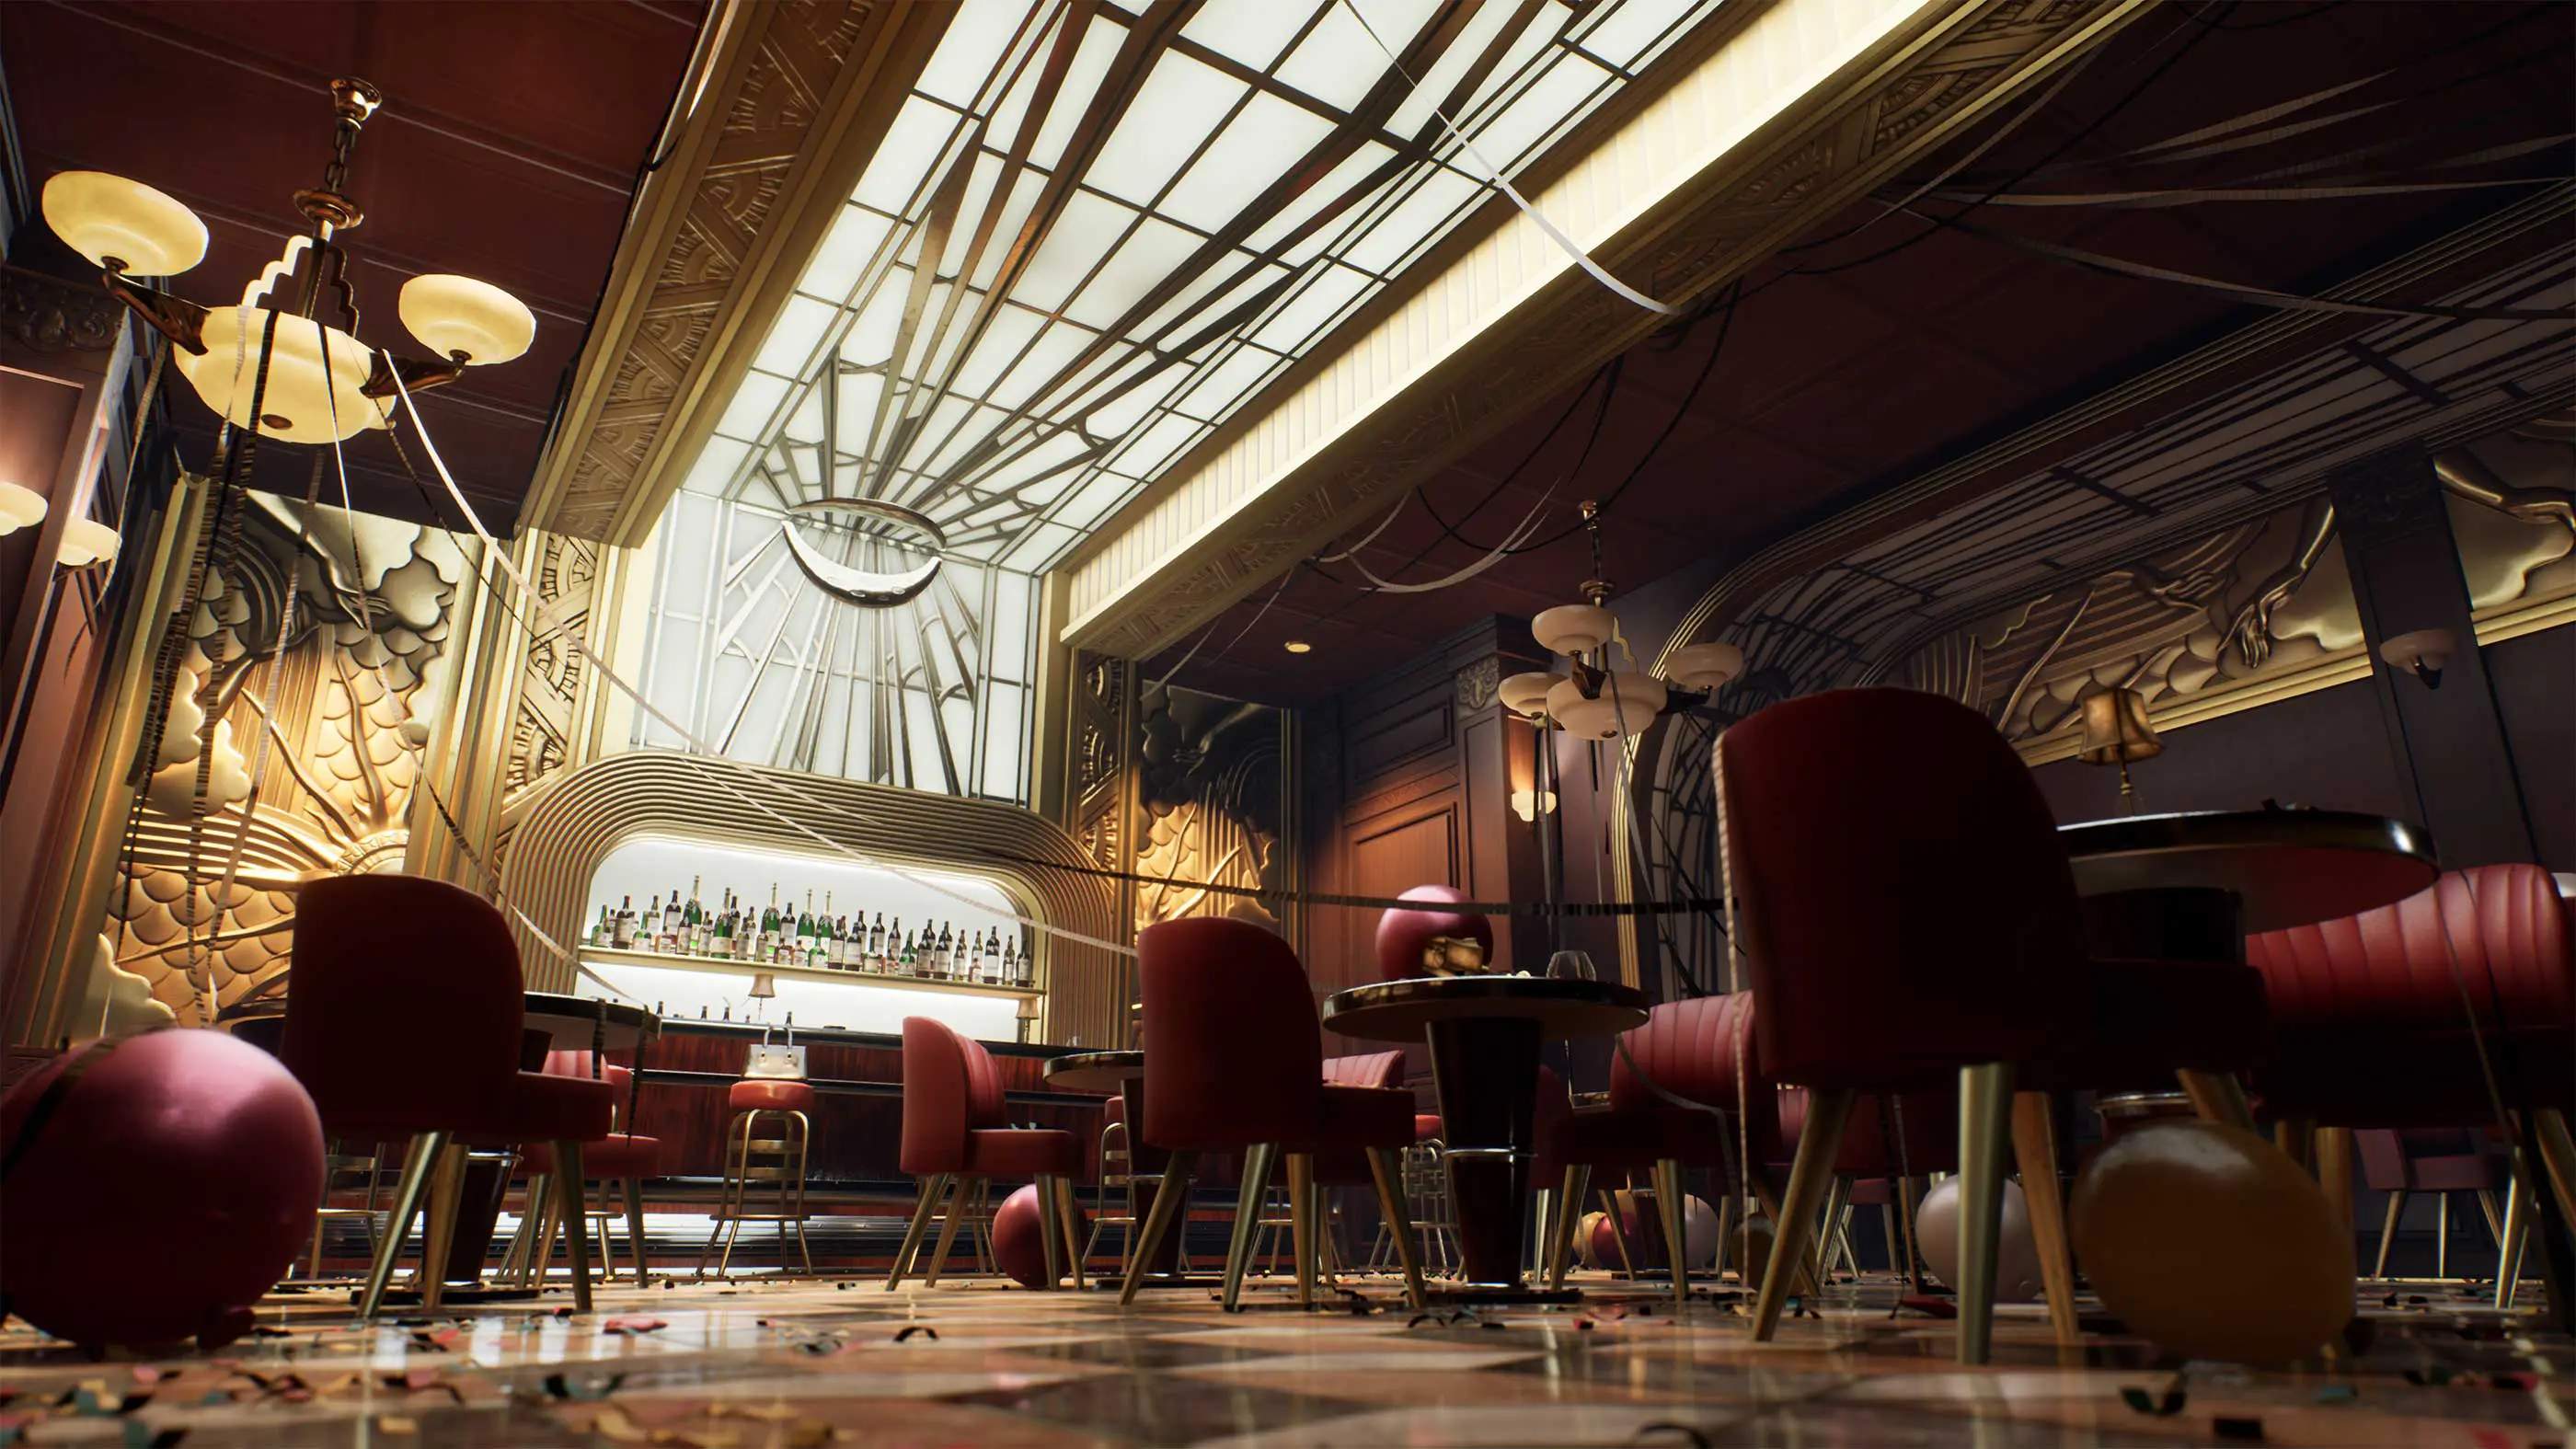 A 3D render of an art deco ball room.